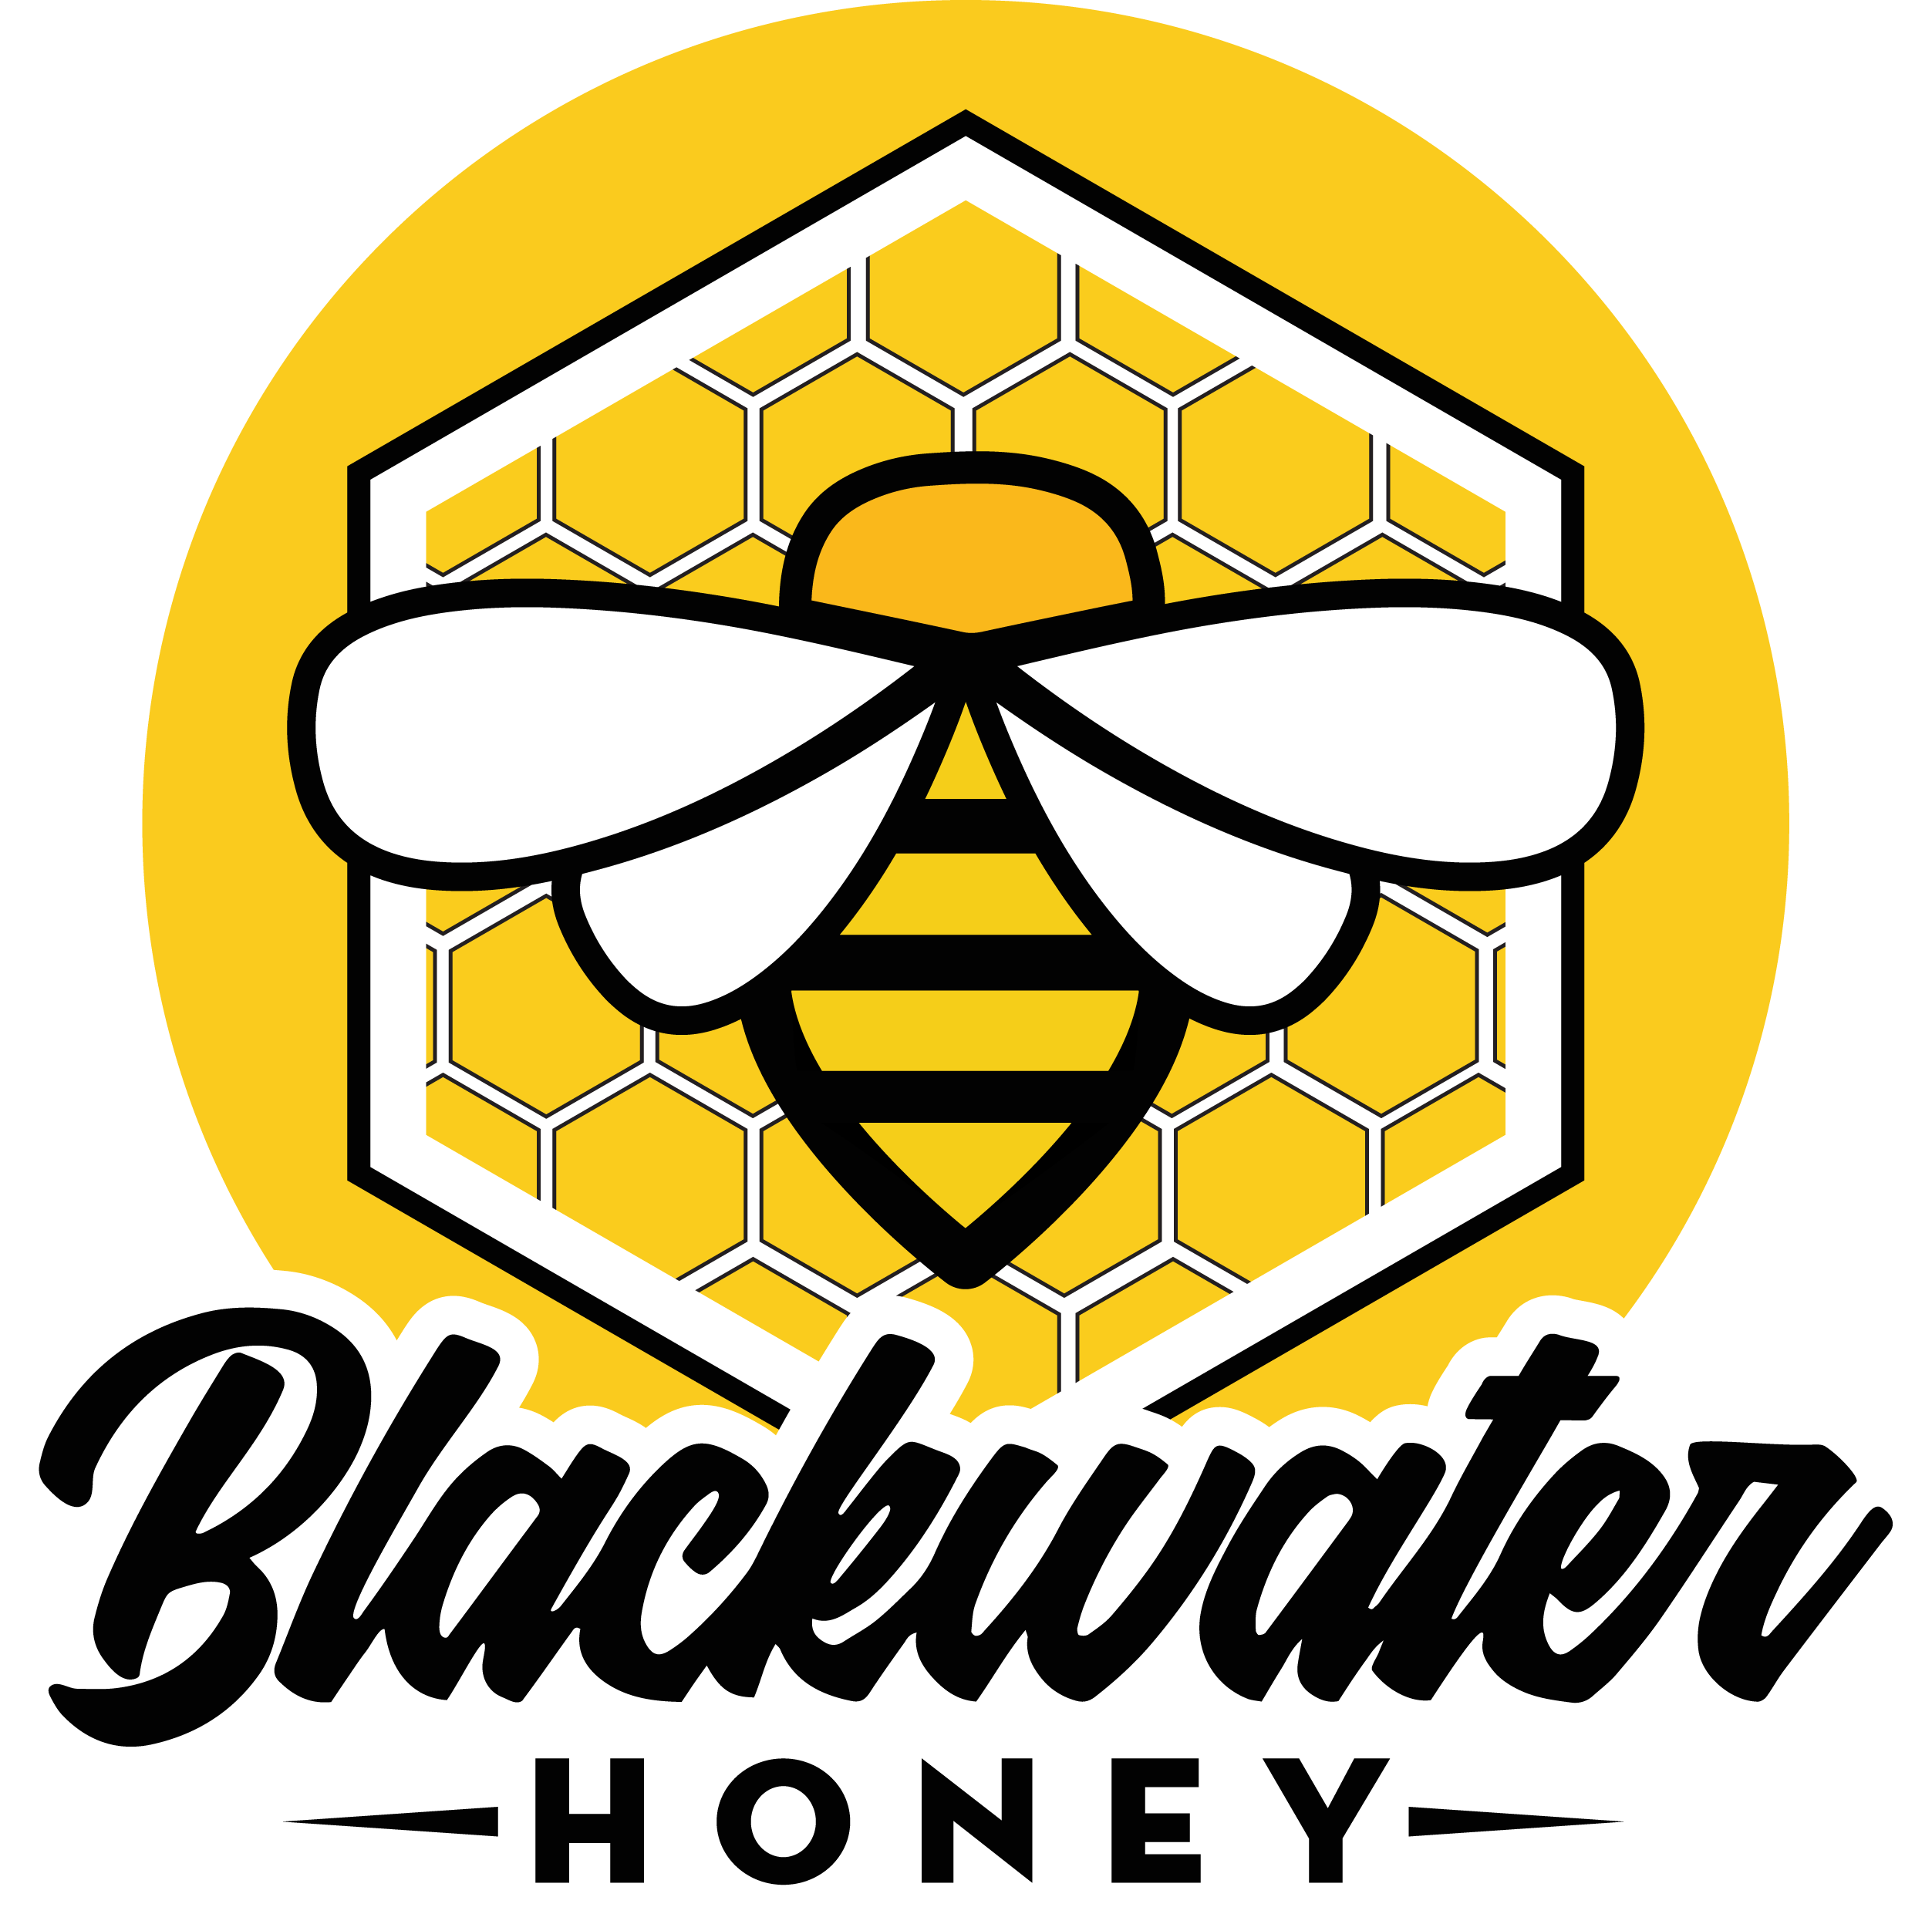 Blackwater Honey